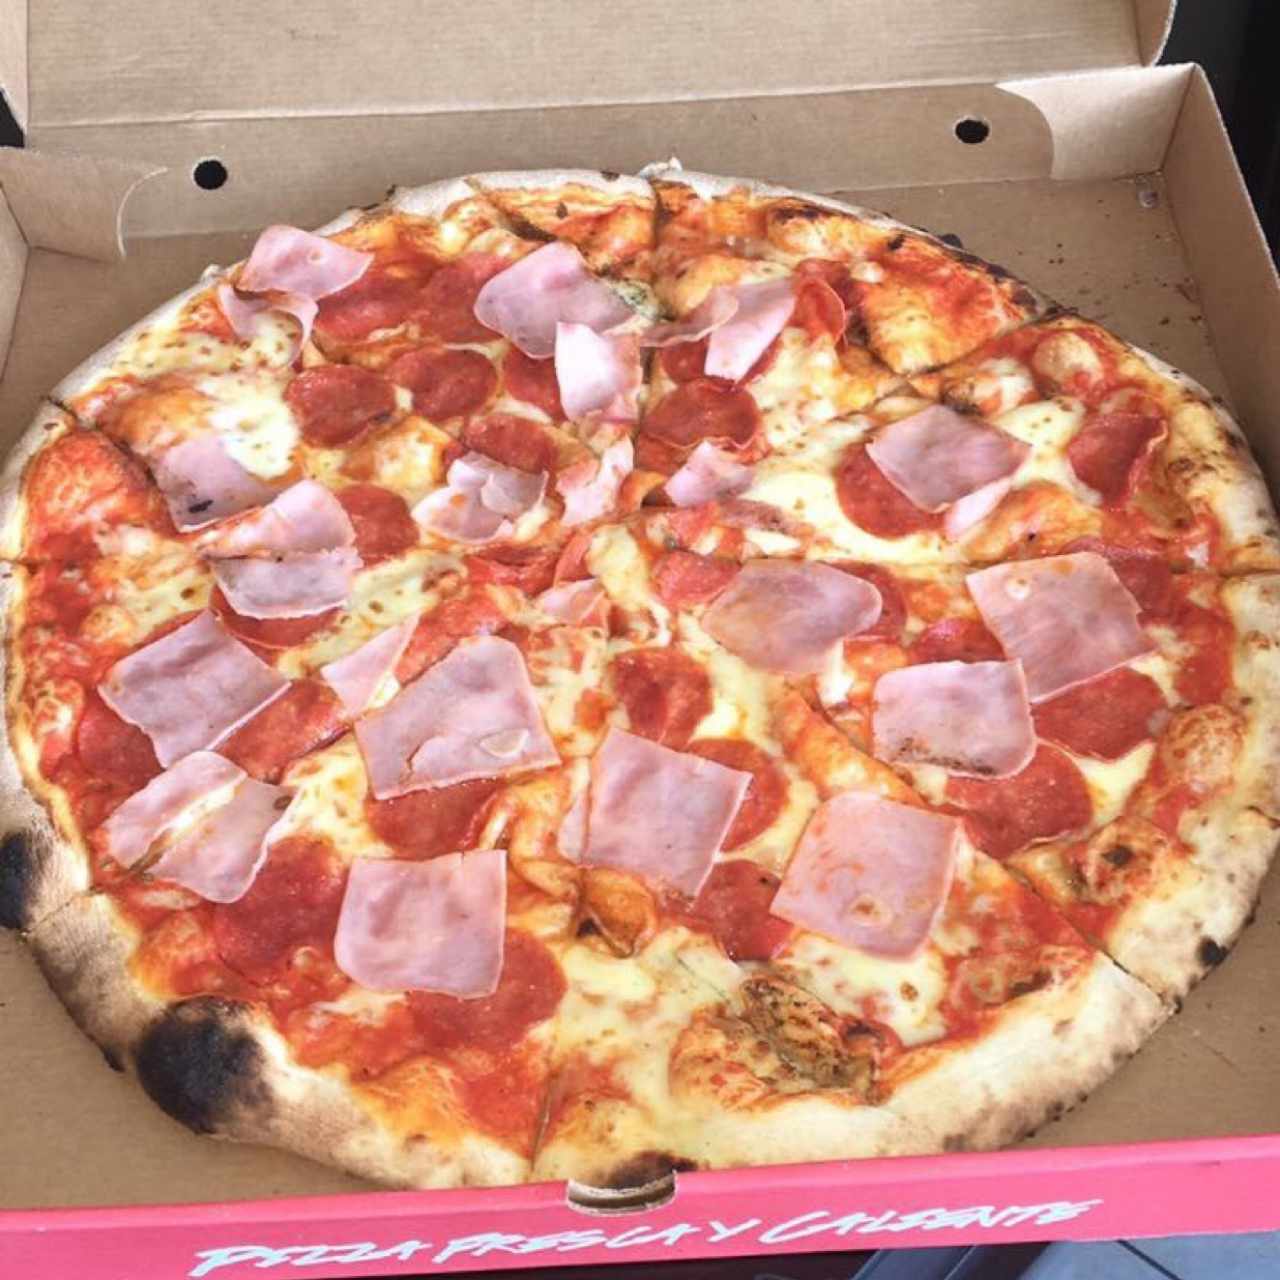 Rica pizza de pepperoni con extra de jamón👅